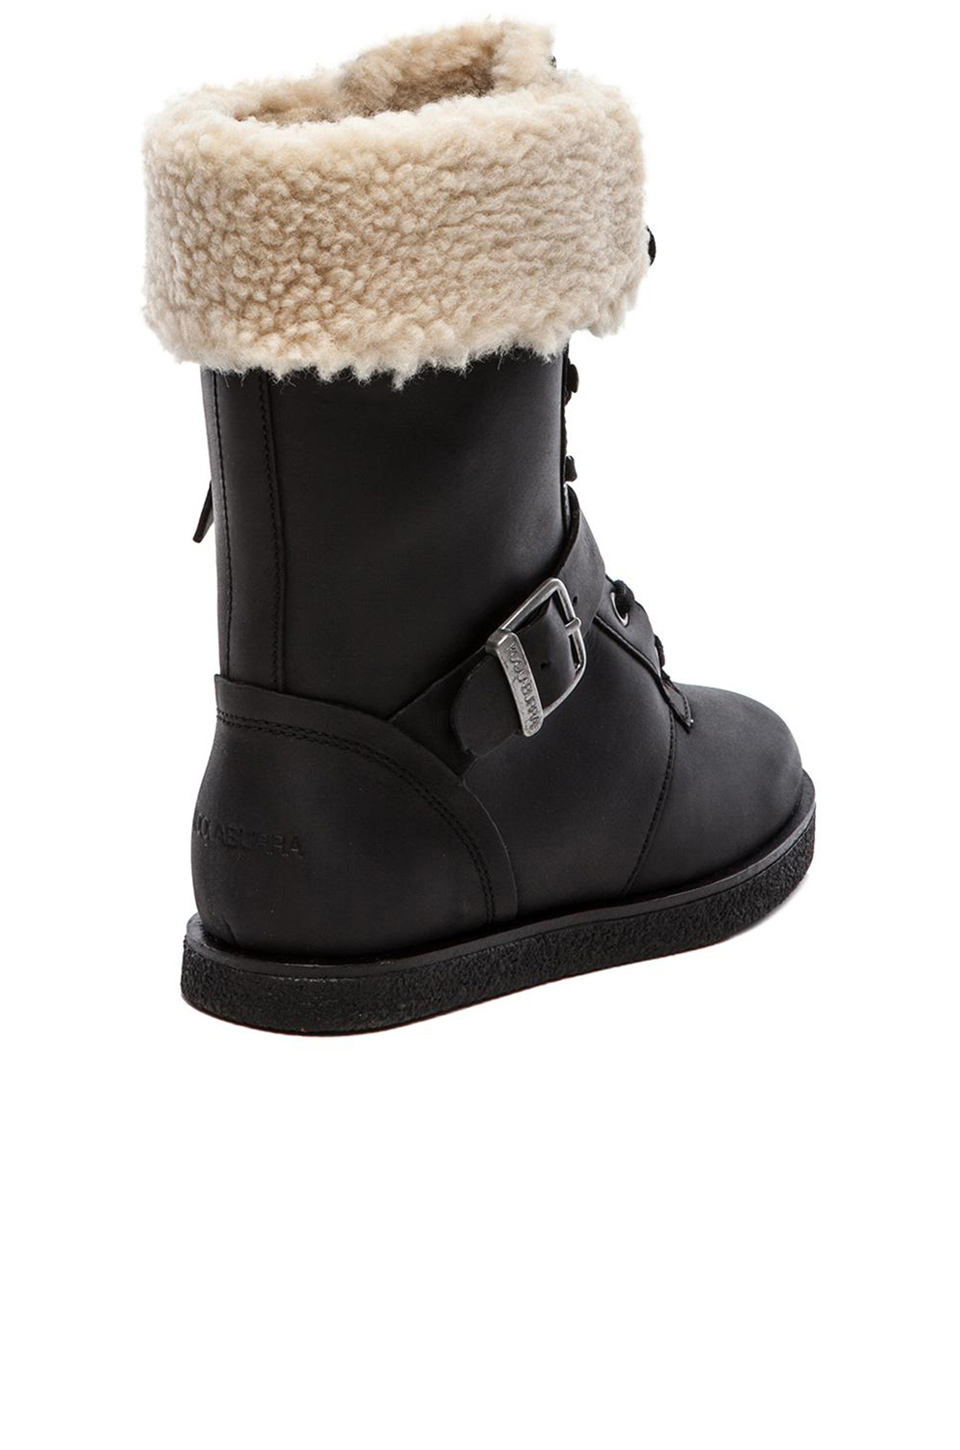 Lyst - Koolaburra Jovi Boot With Fur in Black